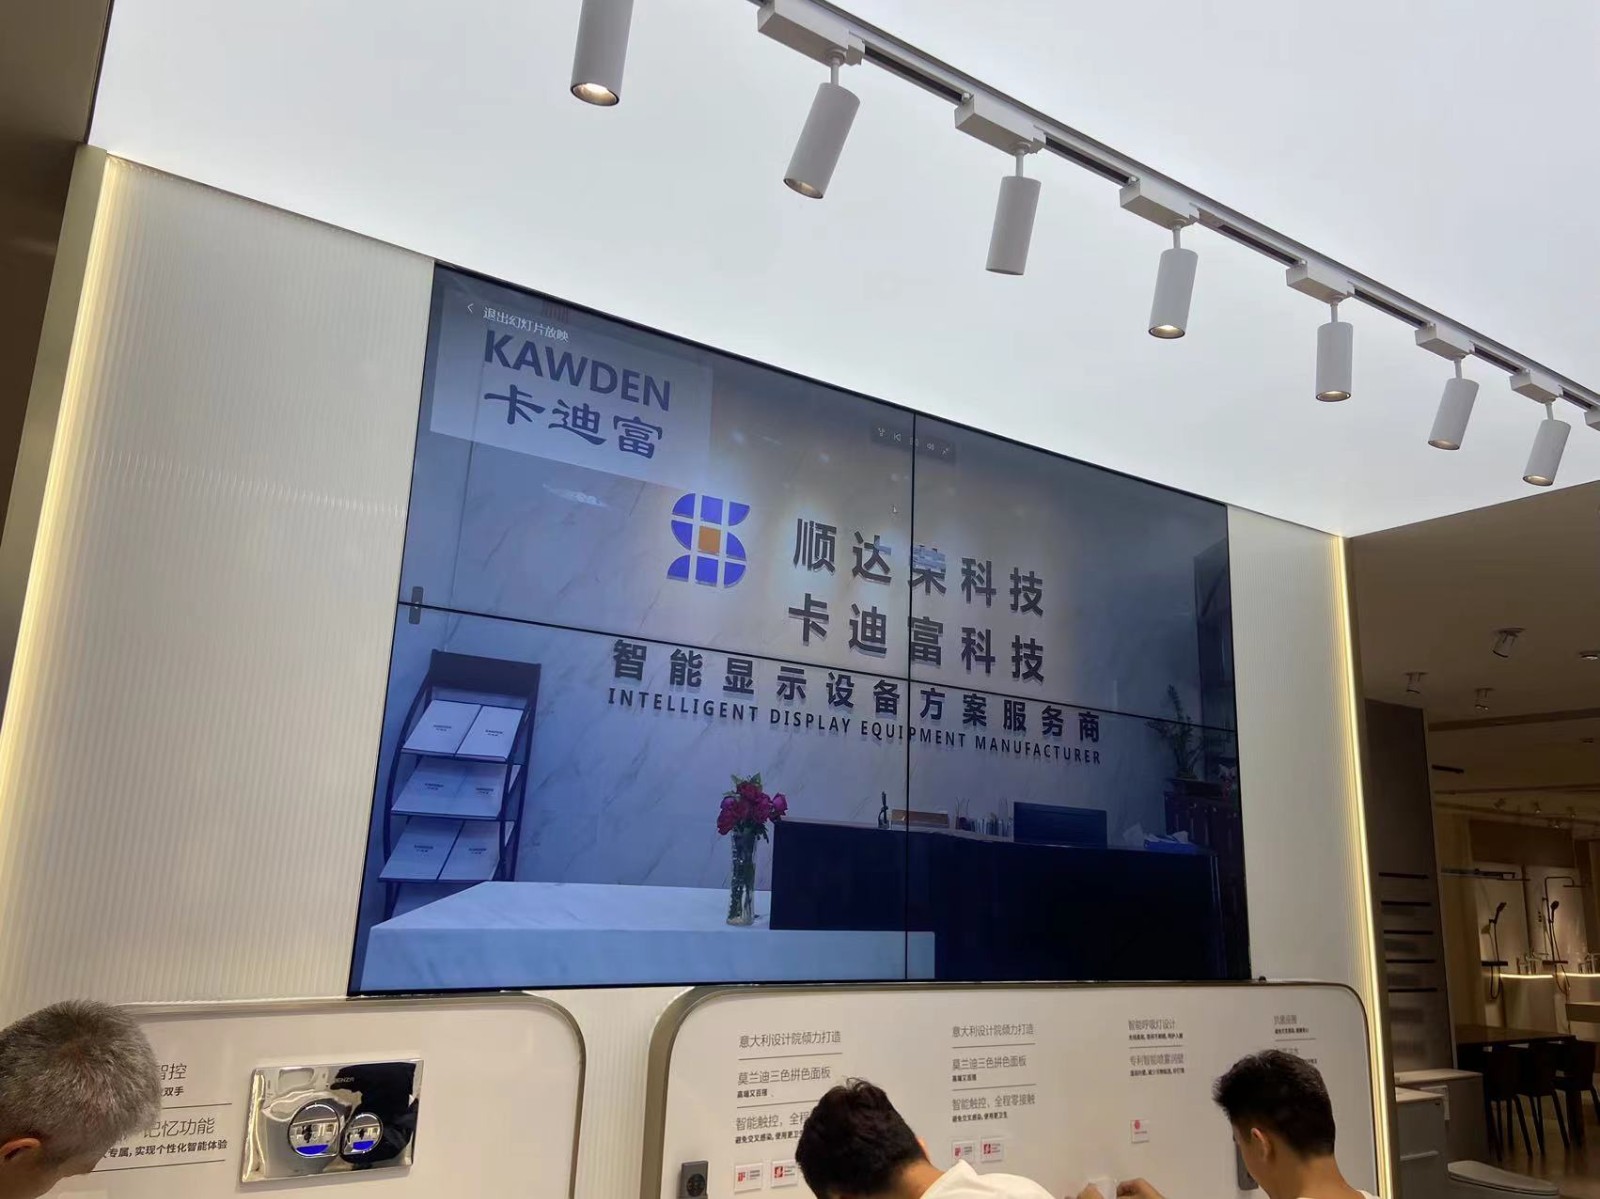 深圳市福田区法恩莎卫浴展示厅安装液晶拼接屏大屏幕案例